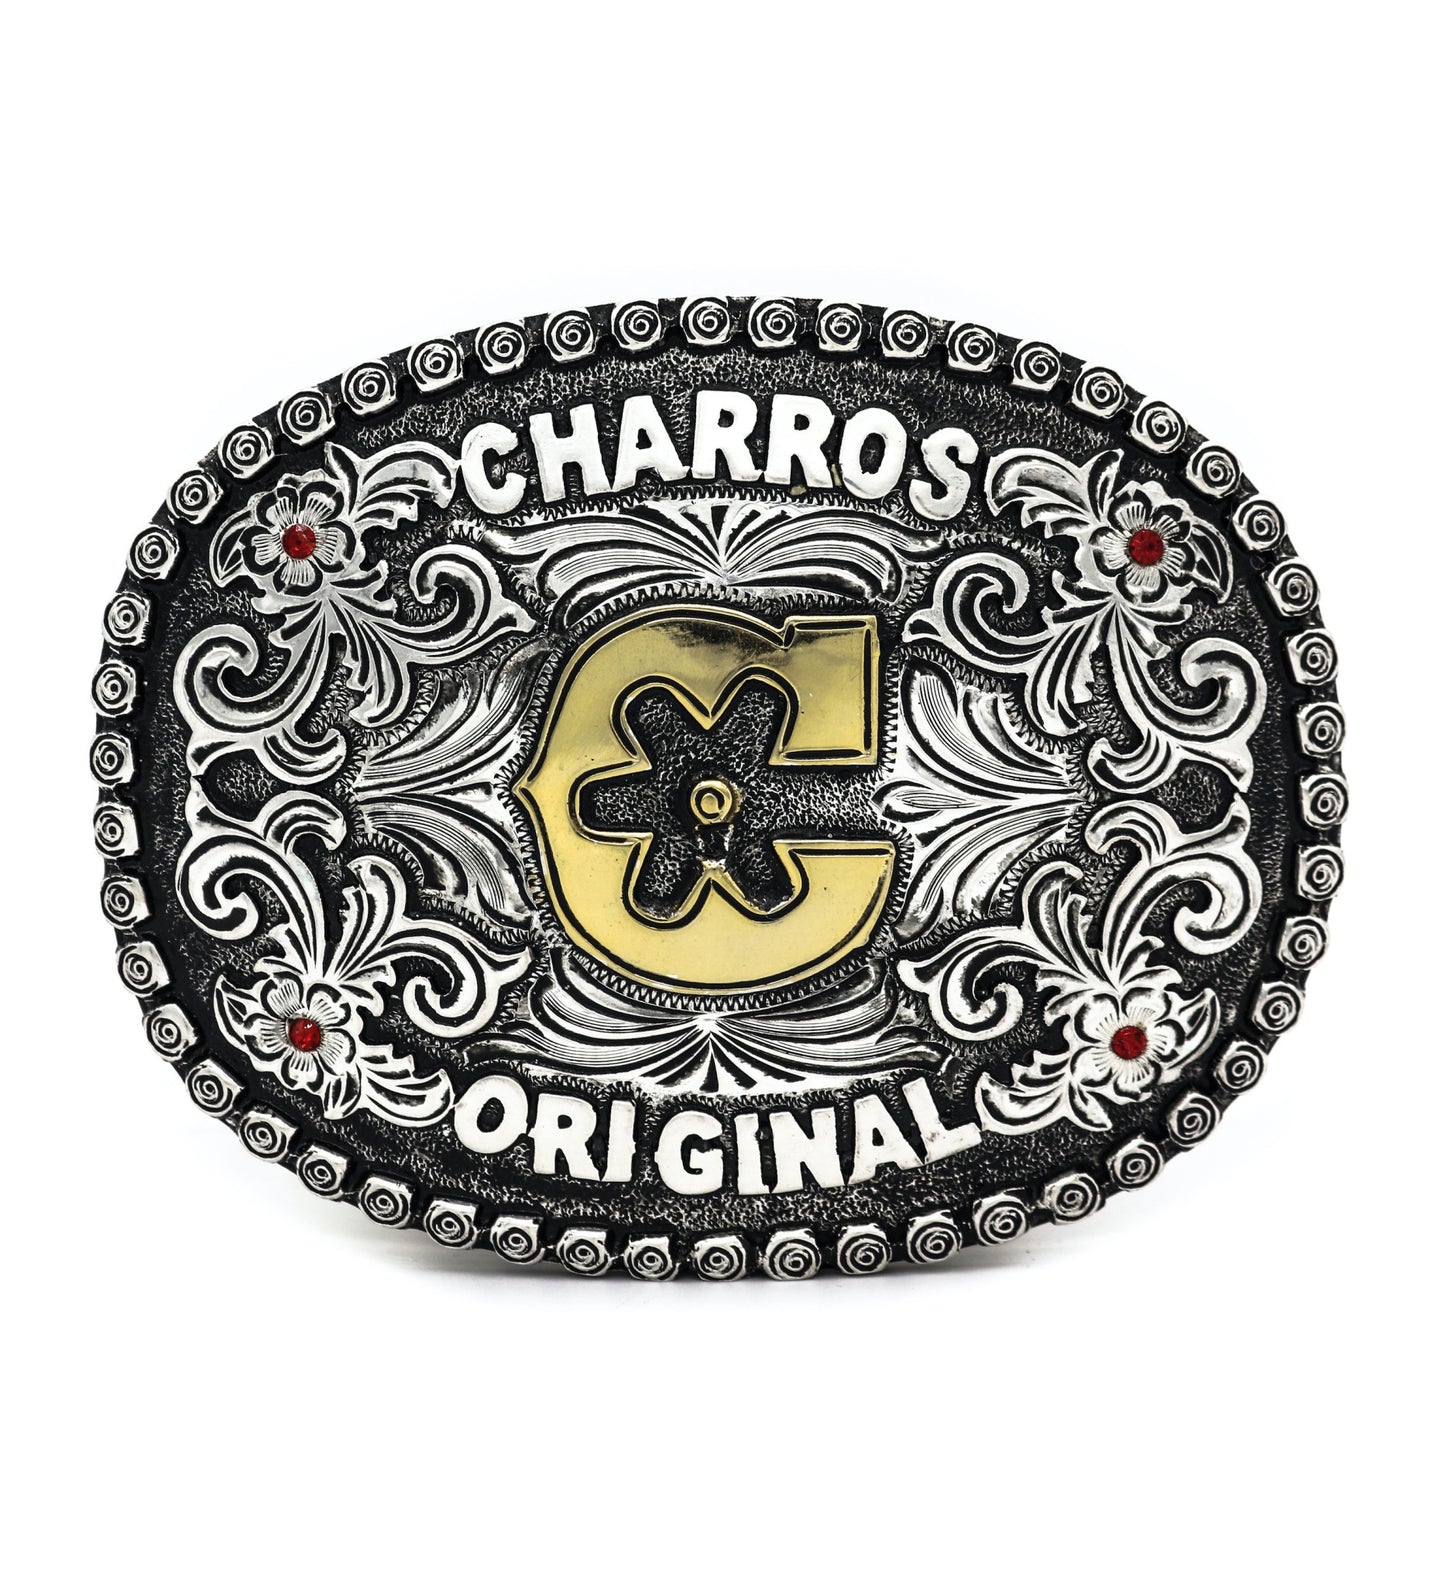 Charros Original C Hebilla Charra Buckle